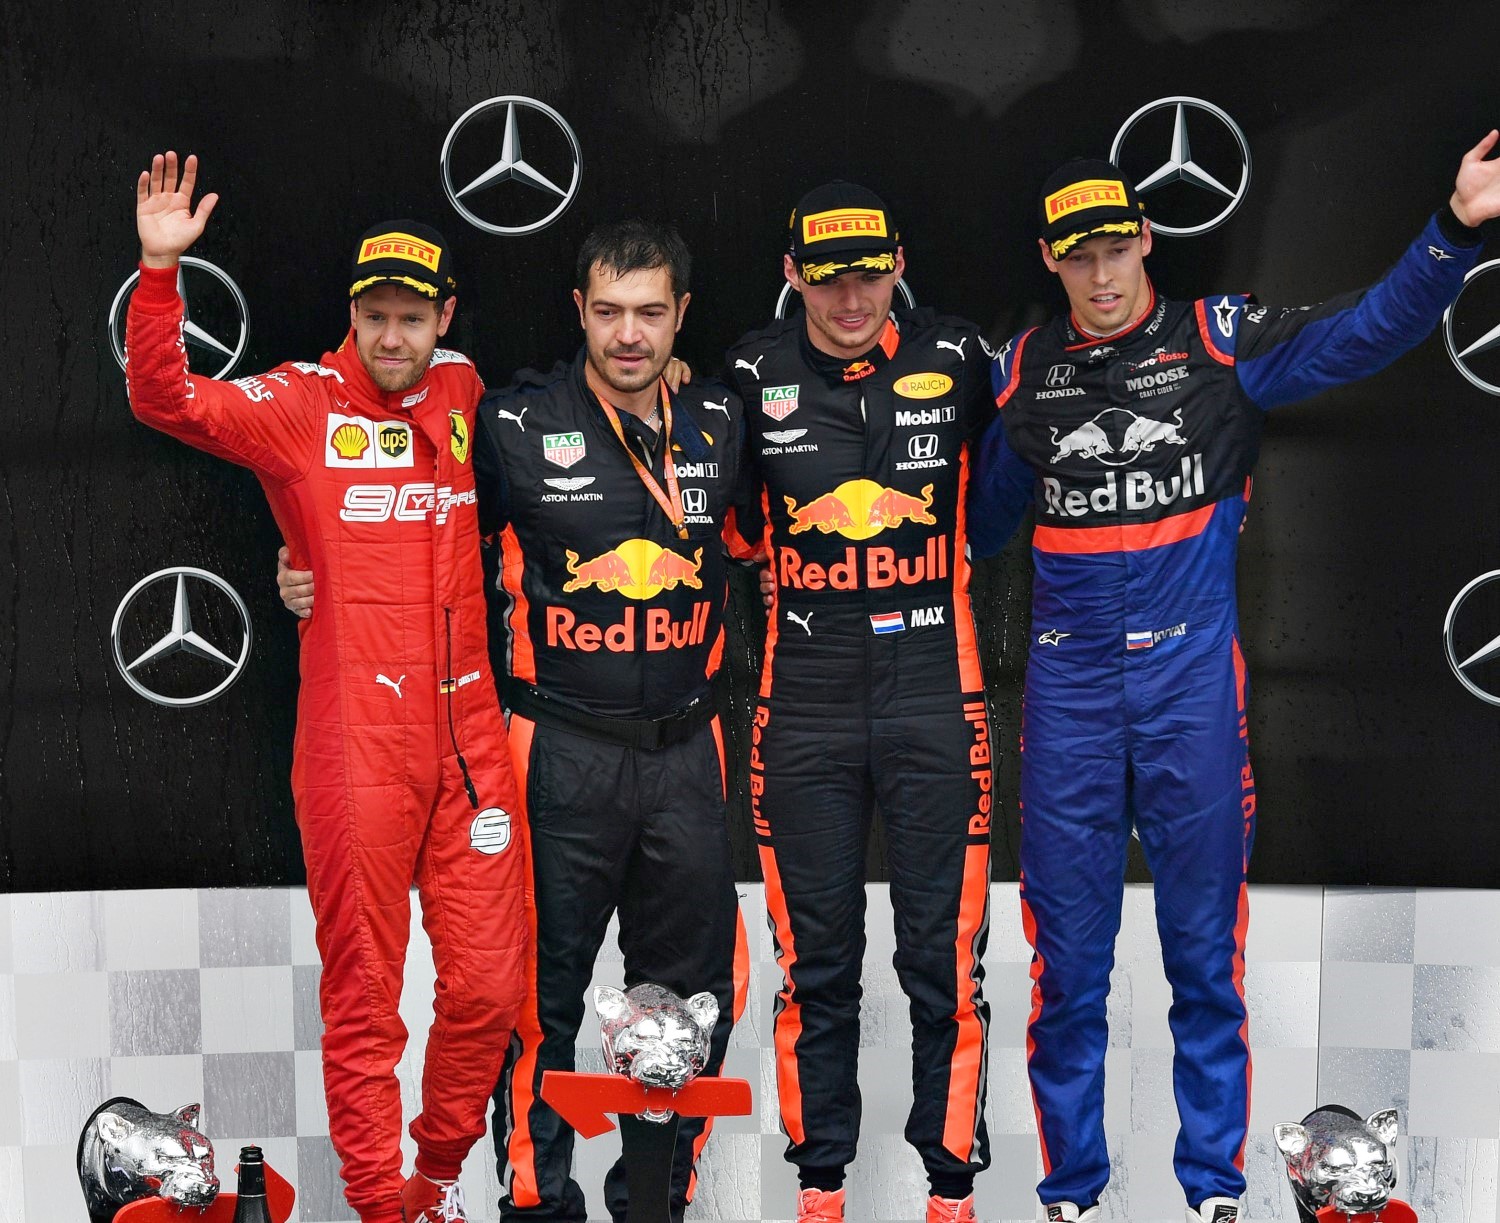 From left, Vettel, Verstappen and Kvyat